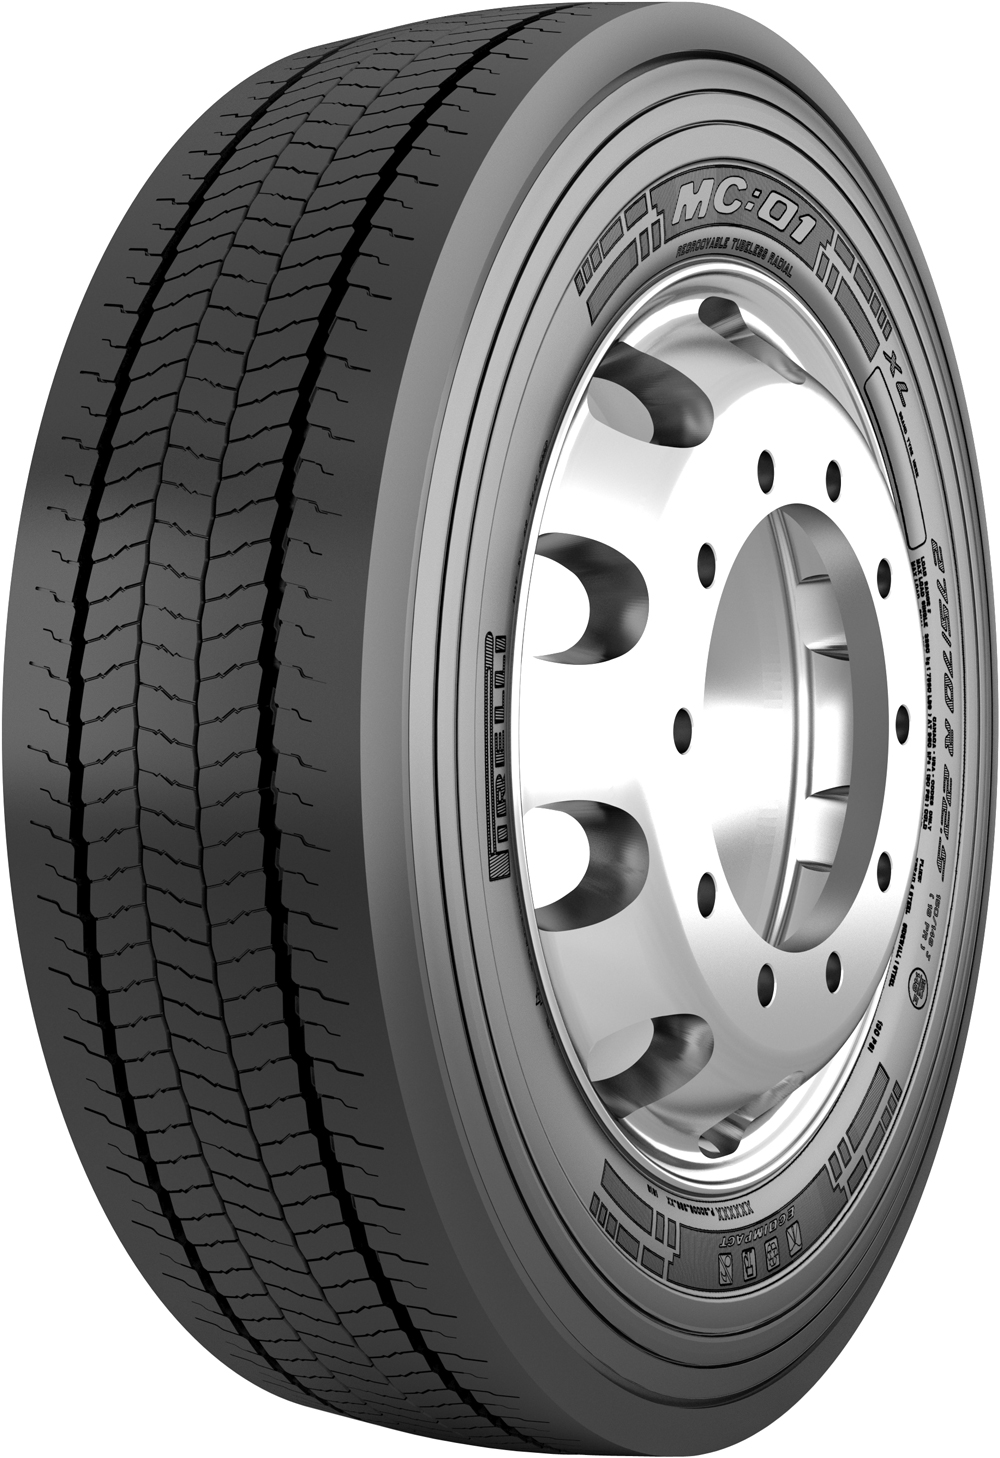 product_type-heavy_tires PIRELLI MC01 275/70 R22.5 150J